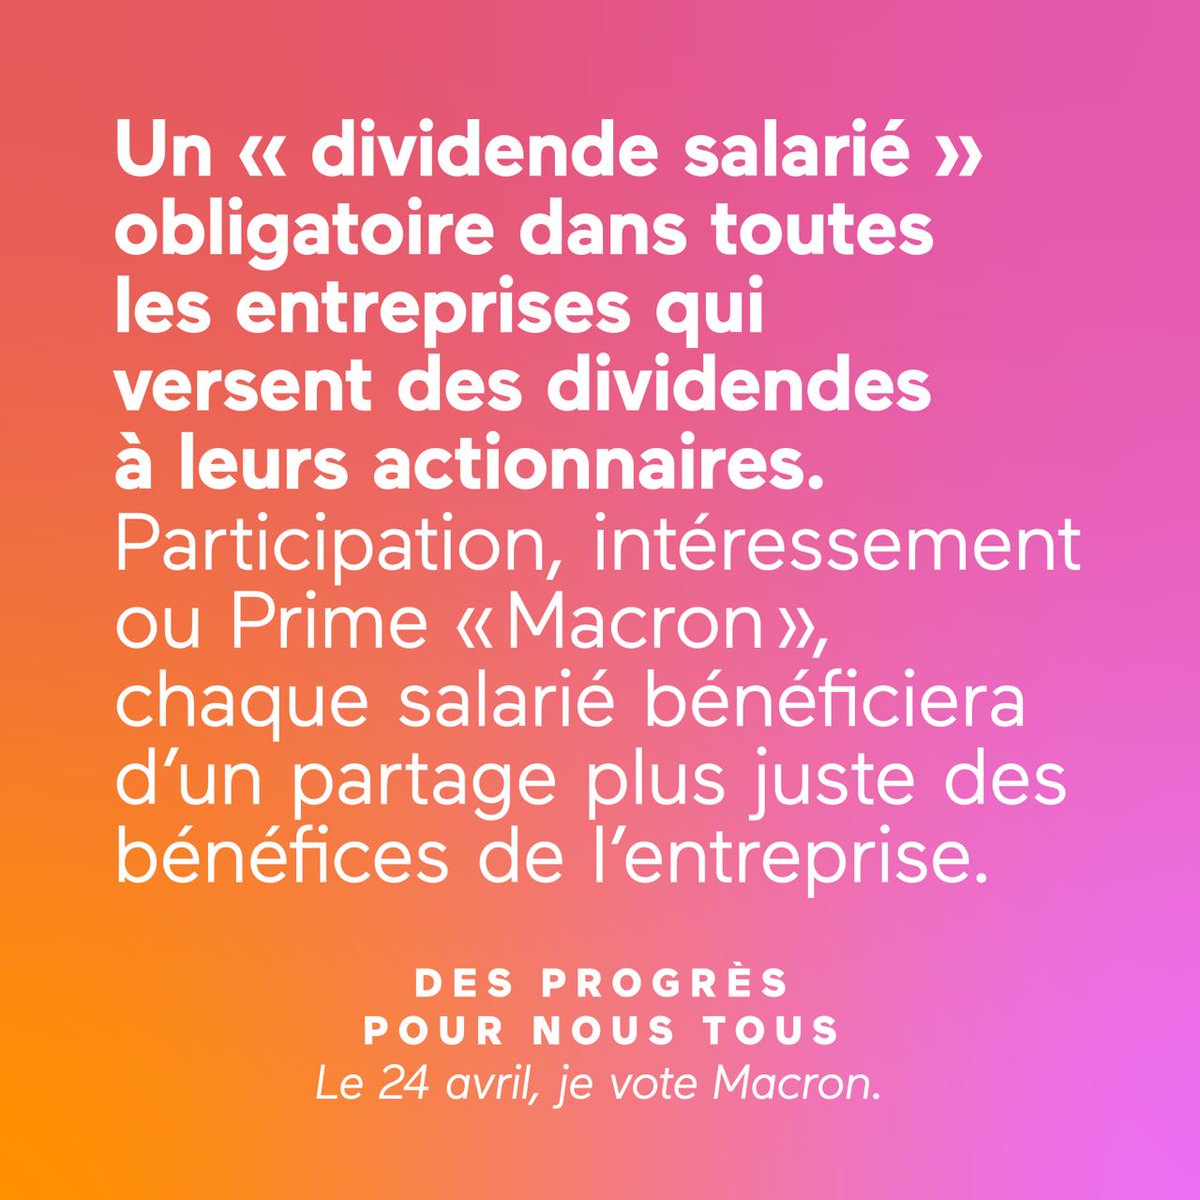 Pour notre pouvoir d'achat, le 24 avril #JeVoteMacron ! 

#EmmanuelMacronavecvous #avecvous2022 #AvecVous #emmanuelmacron #france🇫🇷 #elysee2022 #election2022 #ProjetMacron #noustous